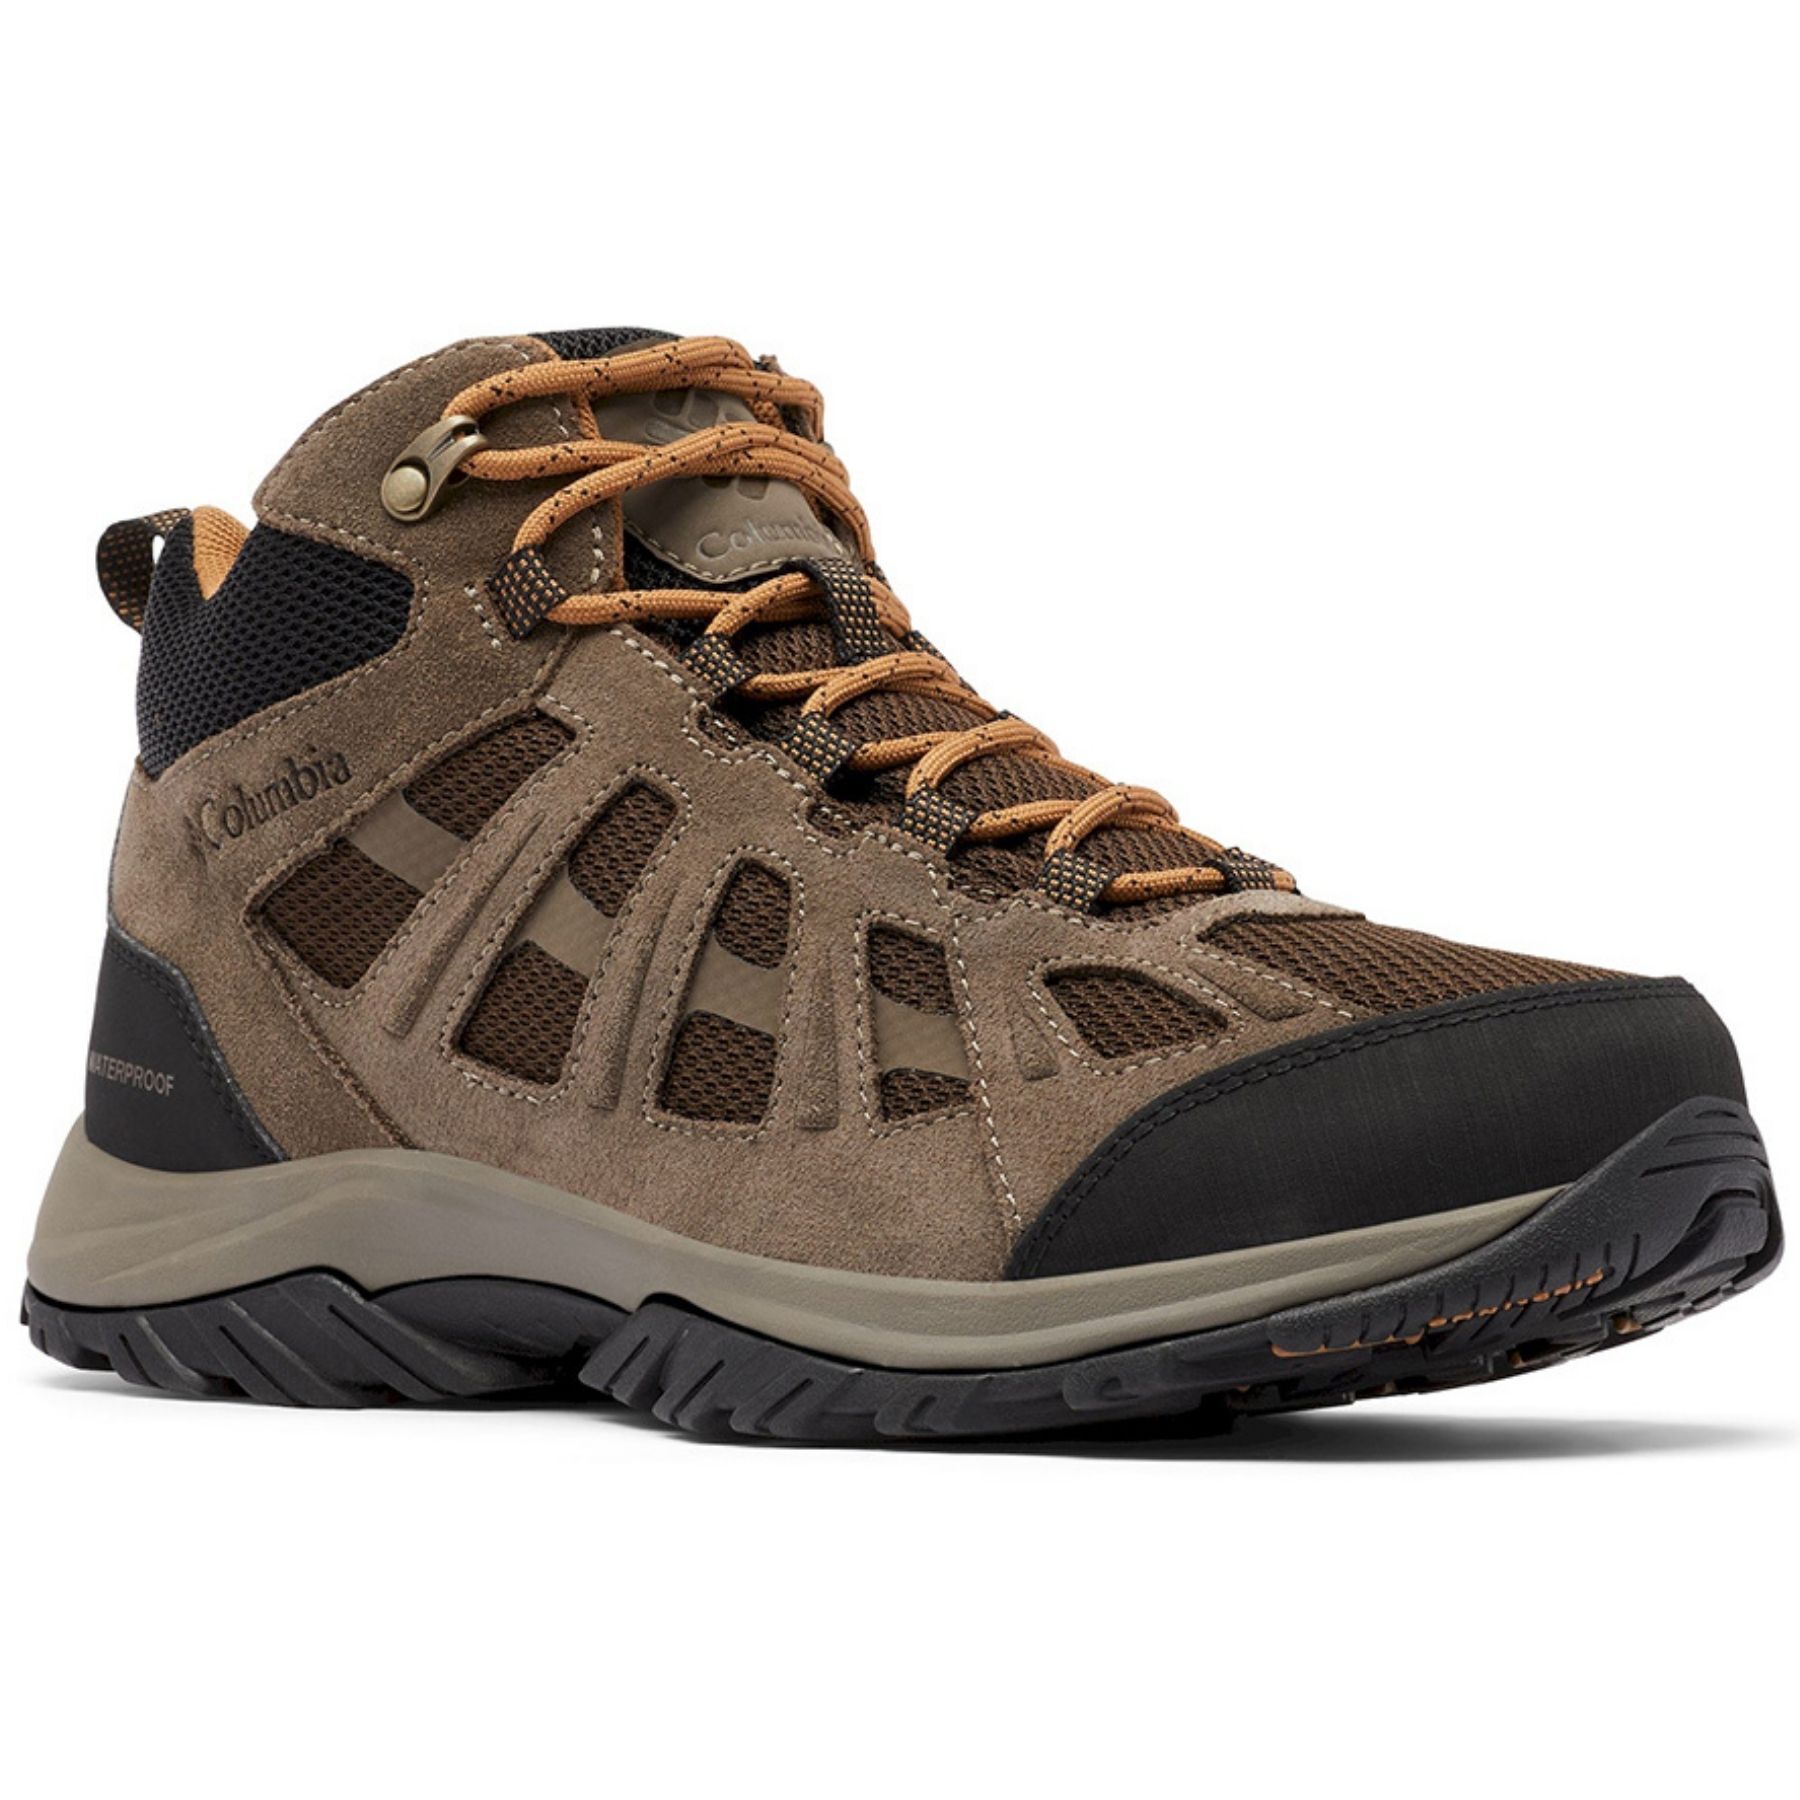 Columbia Redmond III Mid Waterproof - Walking shoes - Men's